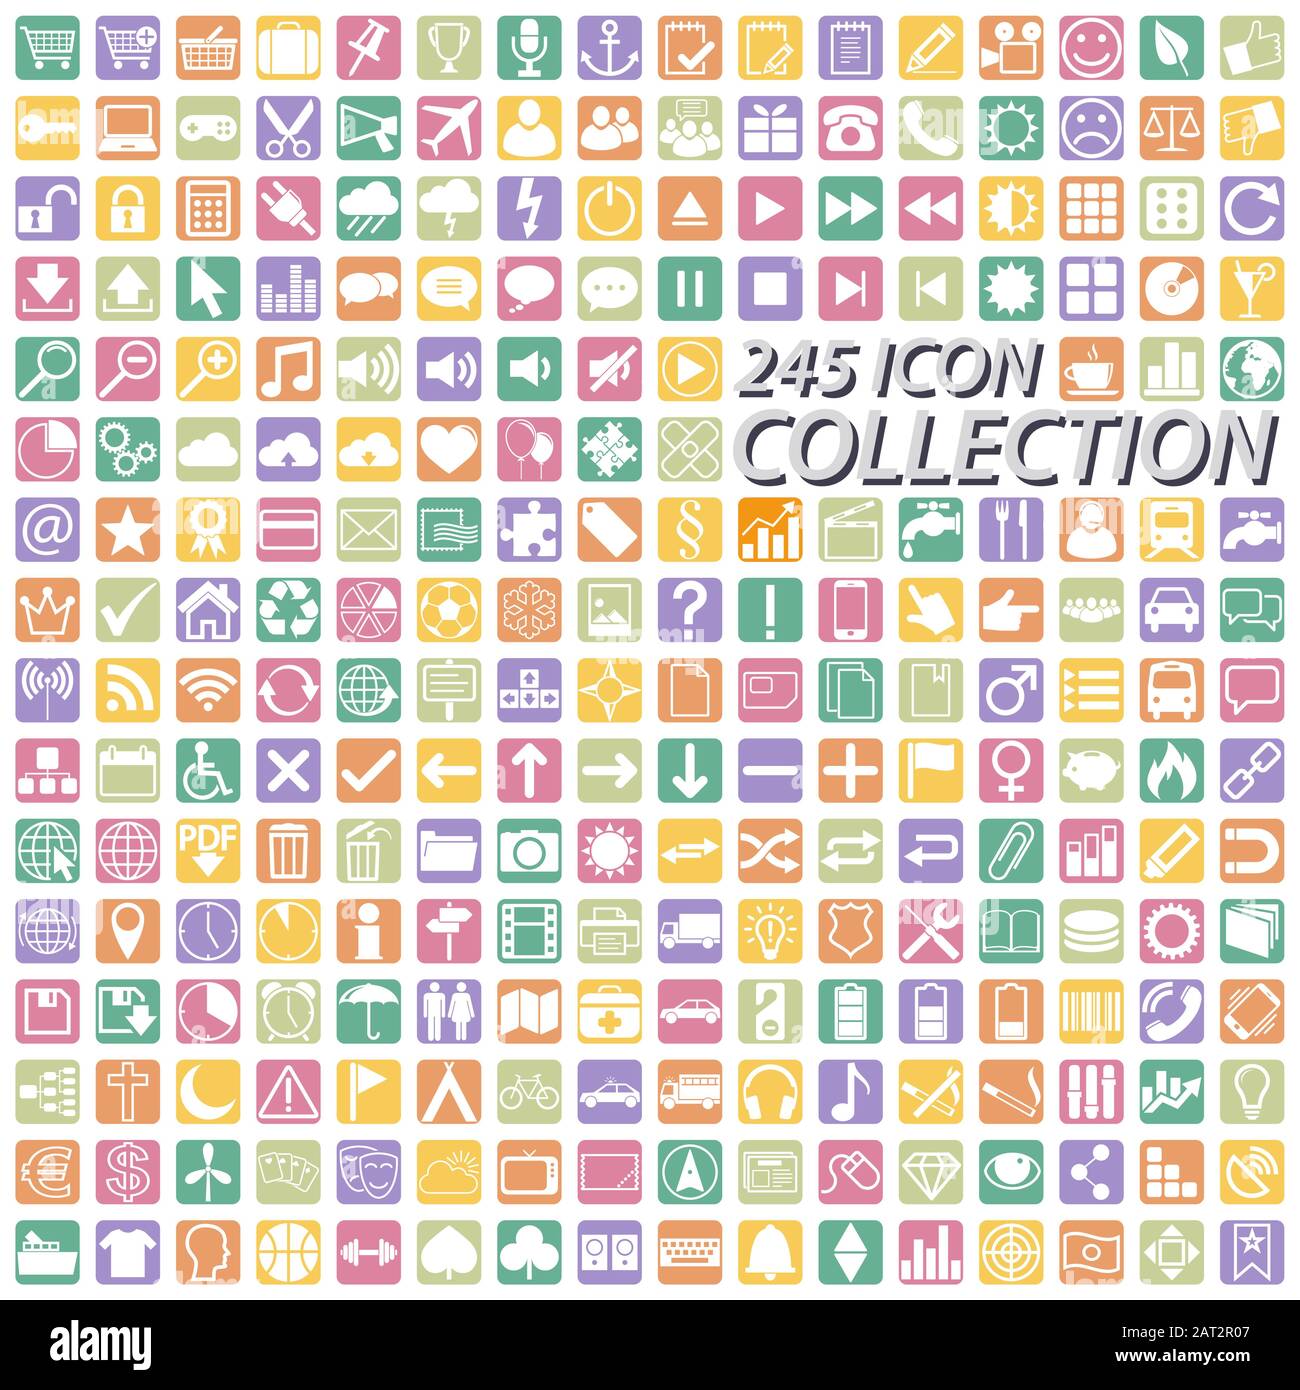 grande collection d'icônes pour l'utilisation professionnelle, 245 icônes de couleur différentes Illustration de Vecteur